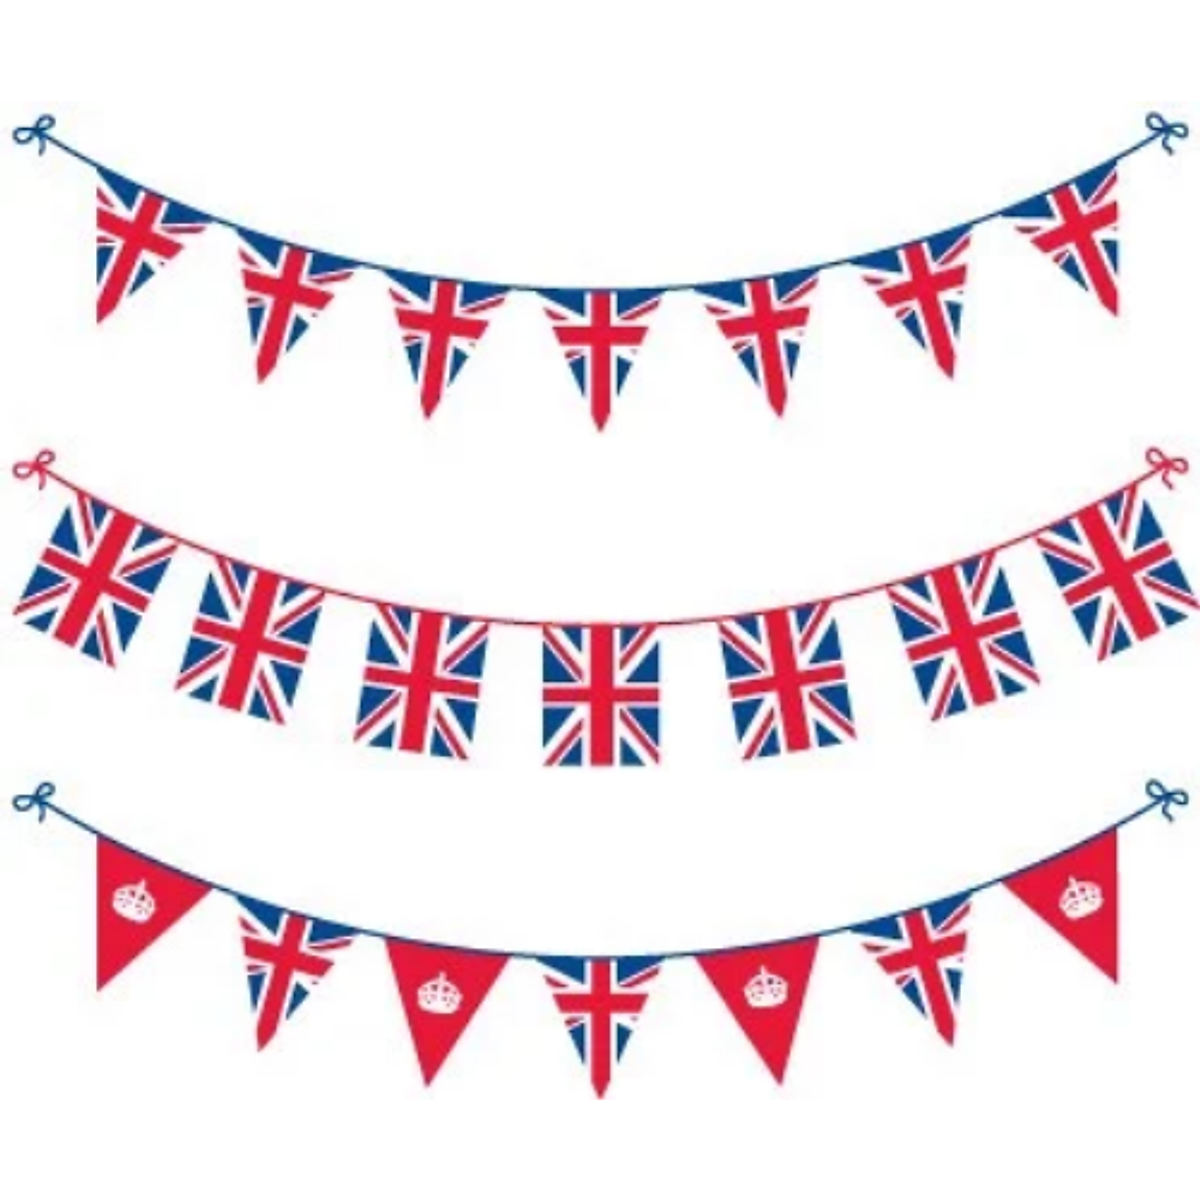 Dây cờ Anh: Cờ Anh luôn là biểu tượng của nền văn hoá và lịch sử Anh Quốc, và dây cờ Anh đã trở thành một trong những đặc sản nổi tiếng của đất nước này. Hãy xem bức ảnh để có cái nhìn sâu sắc về một phần của nền văn hoá Anh Quốc.